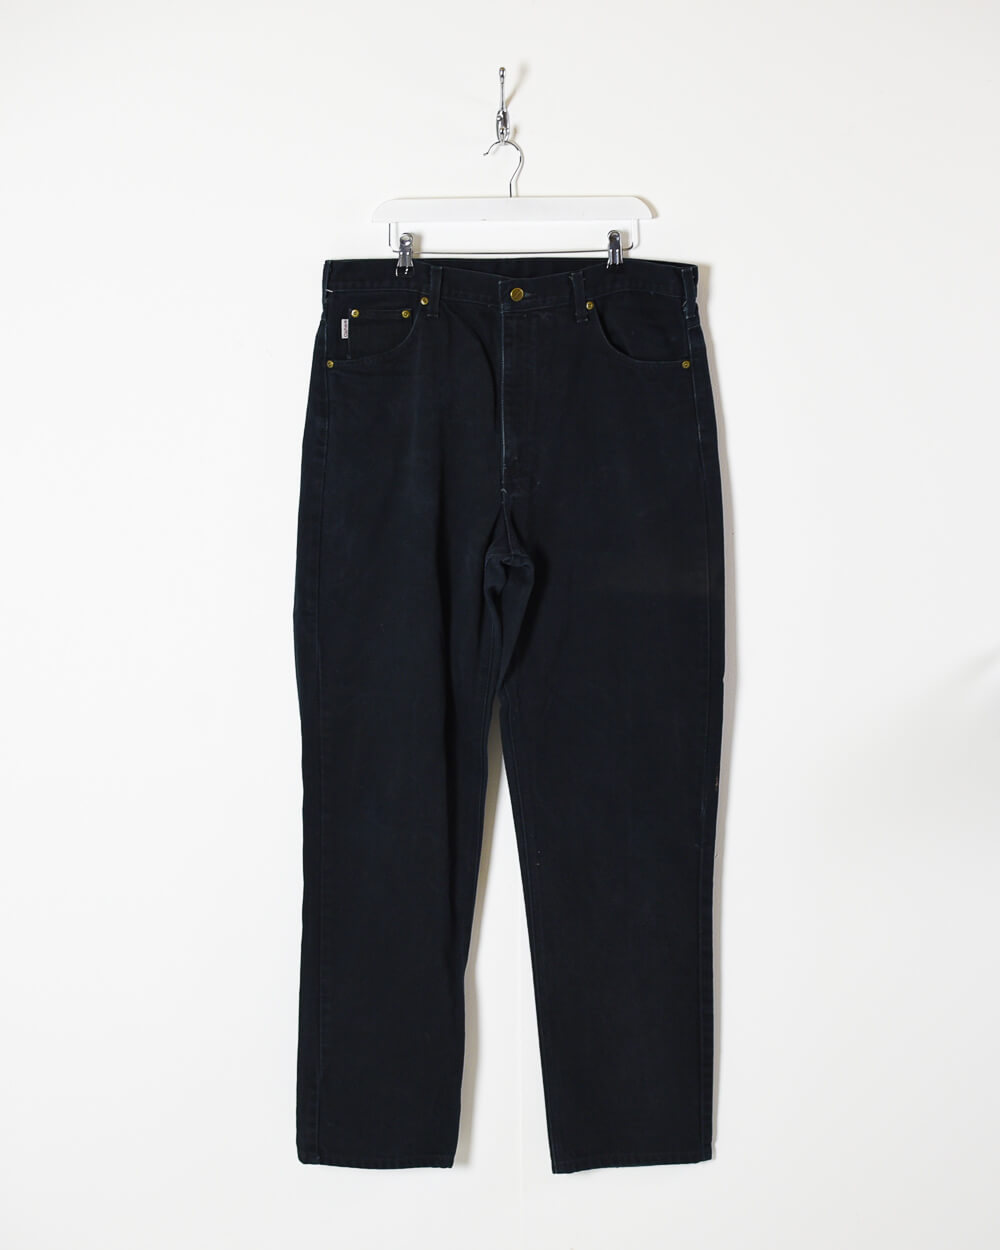 Black Carhartt Jeans - W38 L36